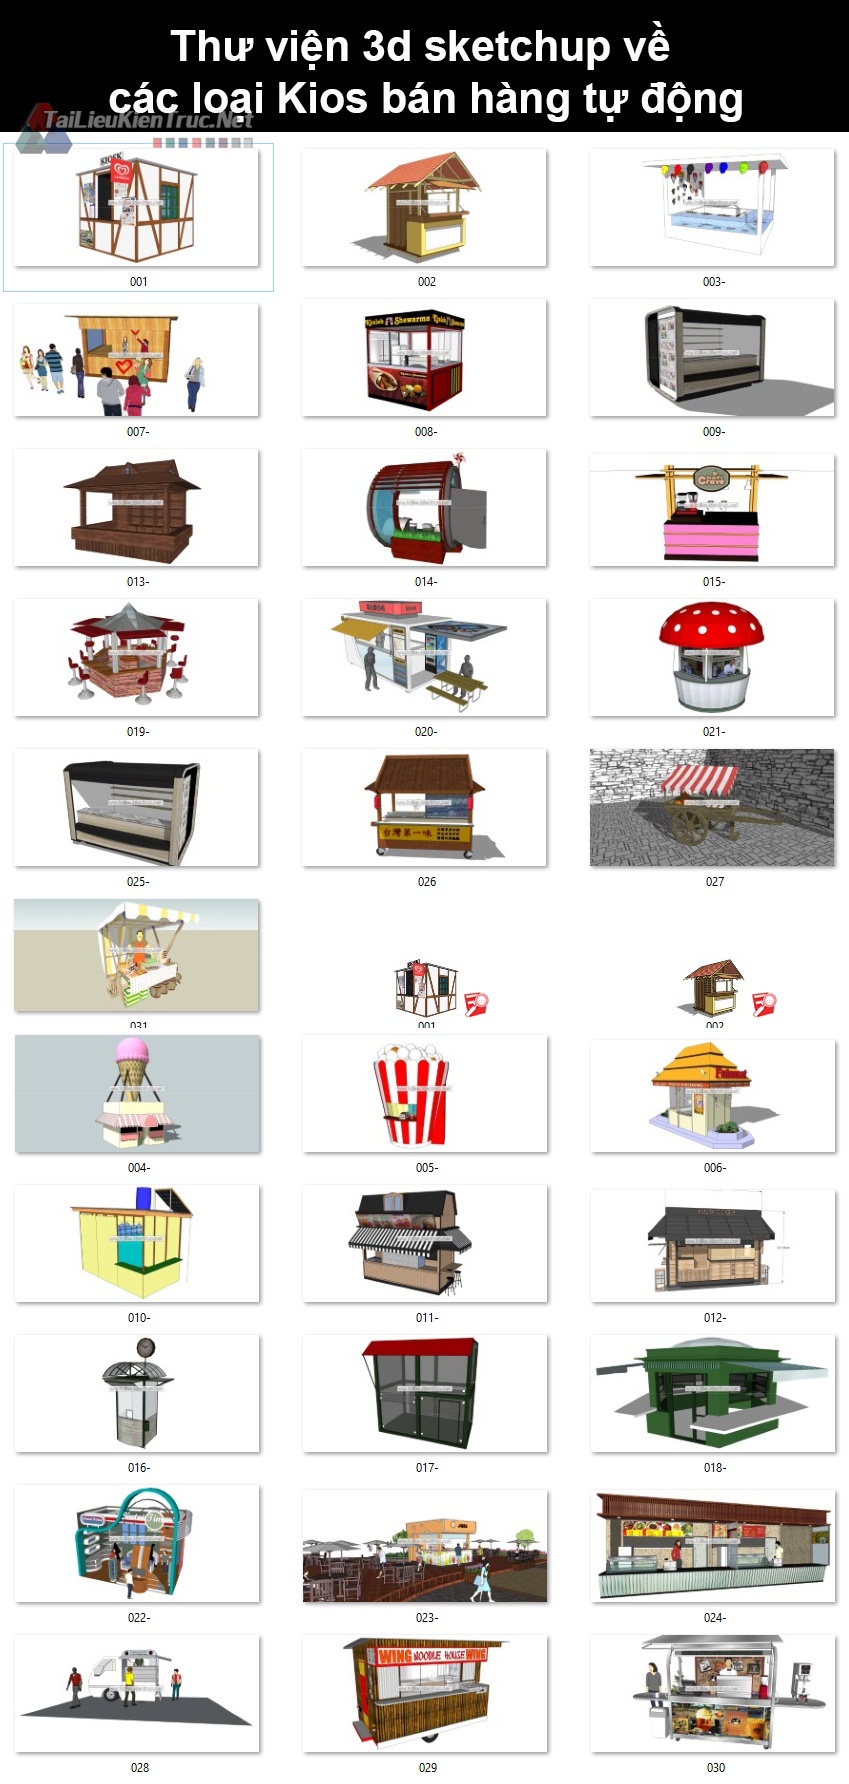 Thư viện 3d sketchup về các loại Kios bán hàng tự động